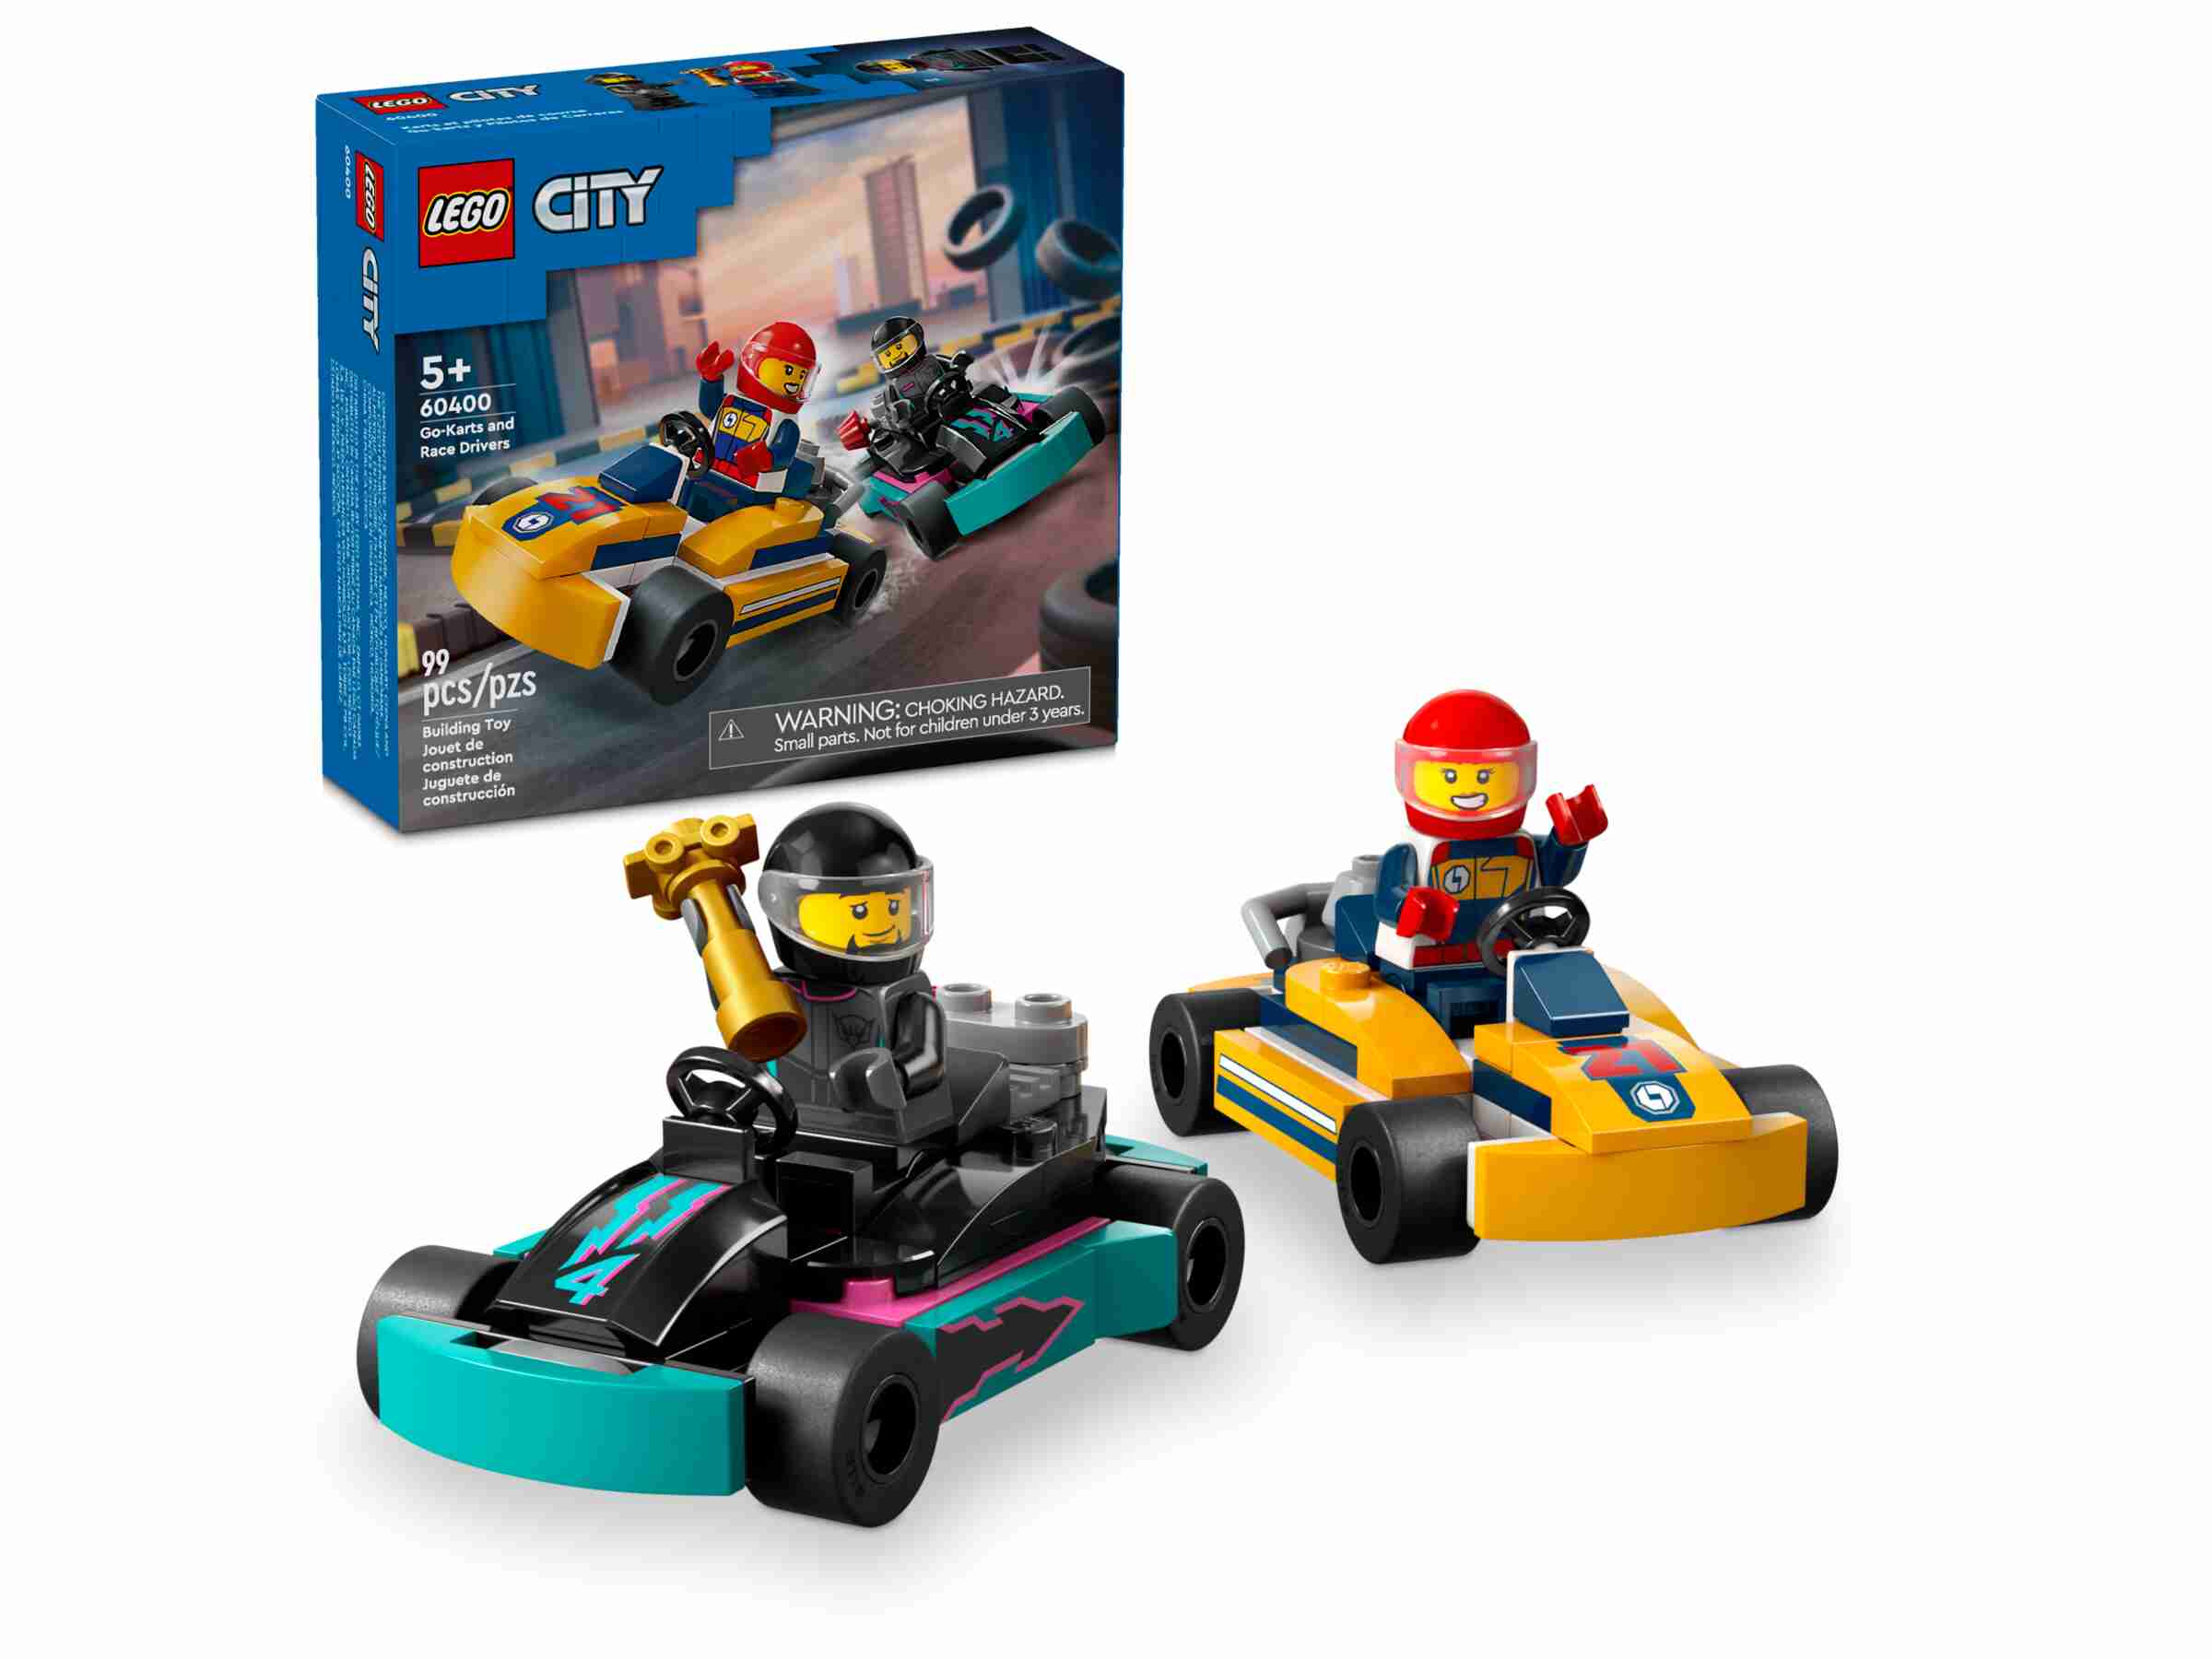 LEGO 60400 City Go-Karts mit Rennfahrern, 2 Minifiguren und ein Siegerpokal